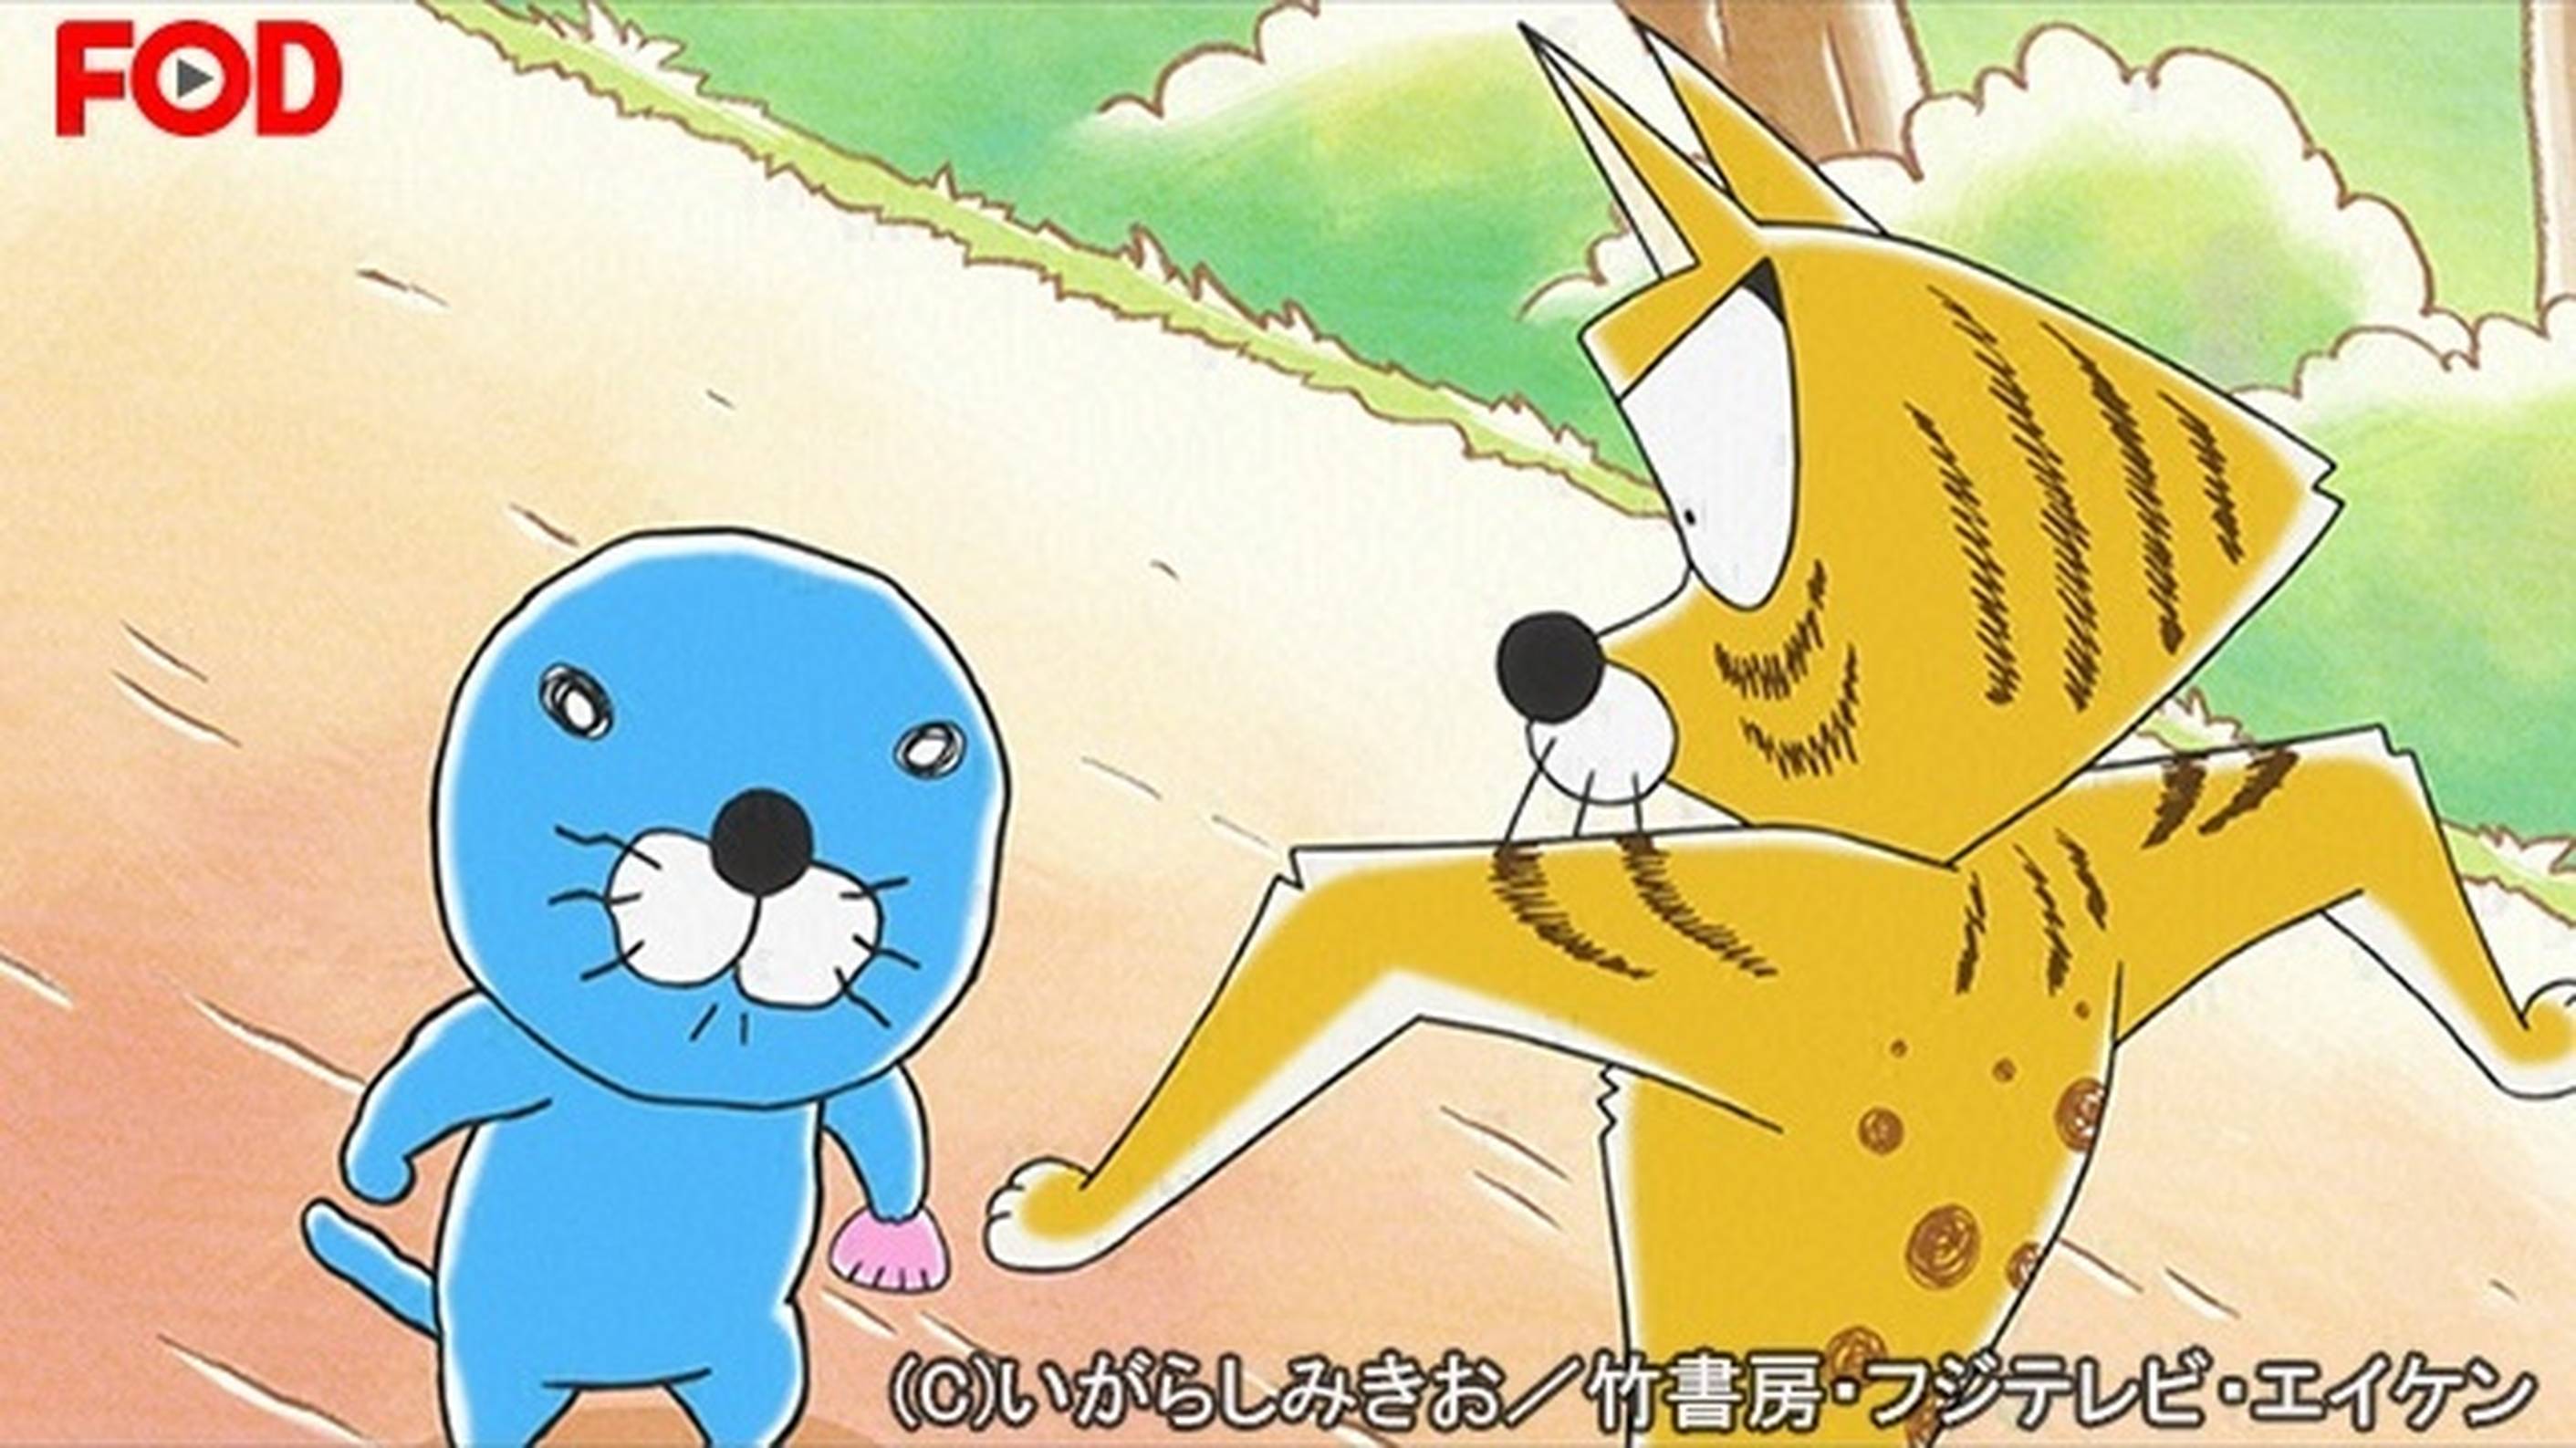 ぼのぼの スナドリネコさんの遊び アニメ 16 の動画視聴 U Next 31日間無料トライアル